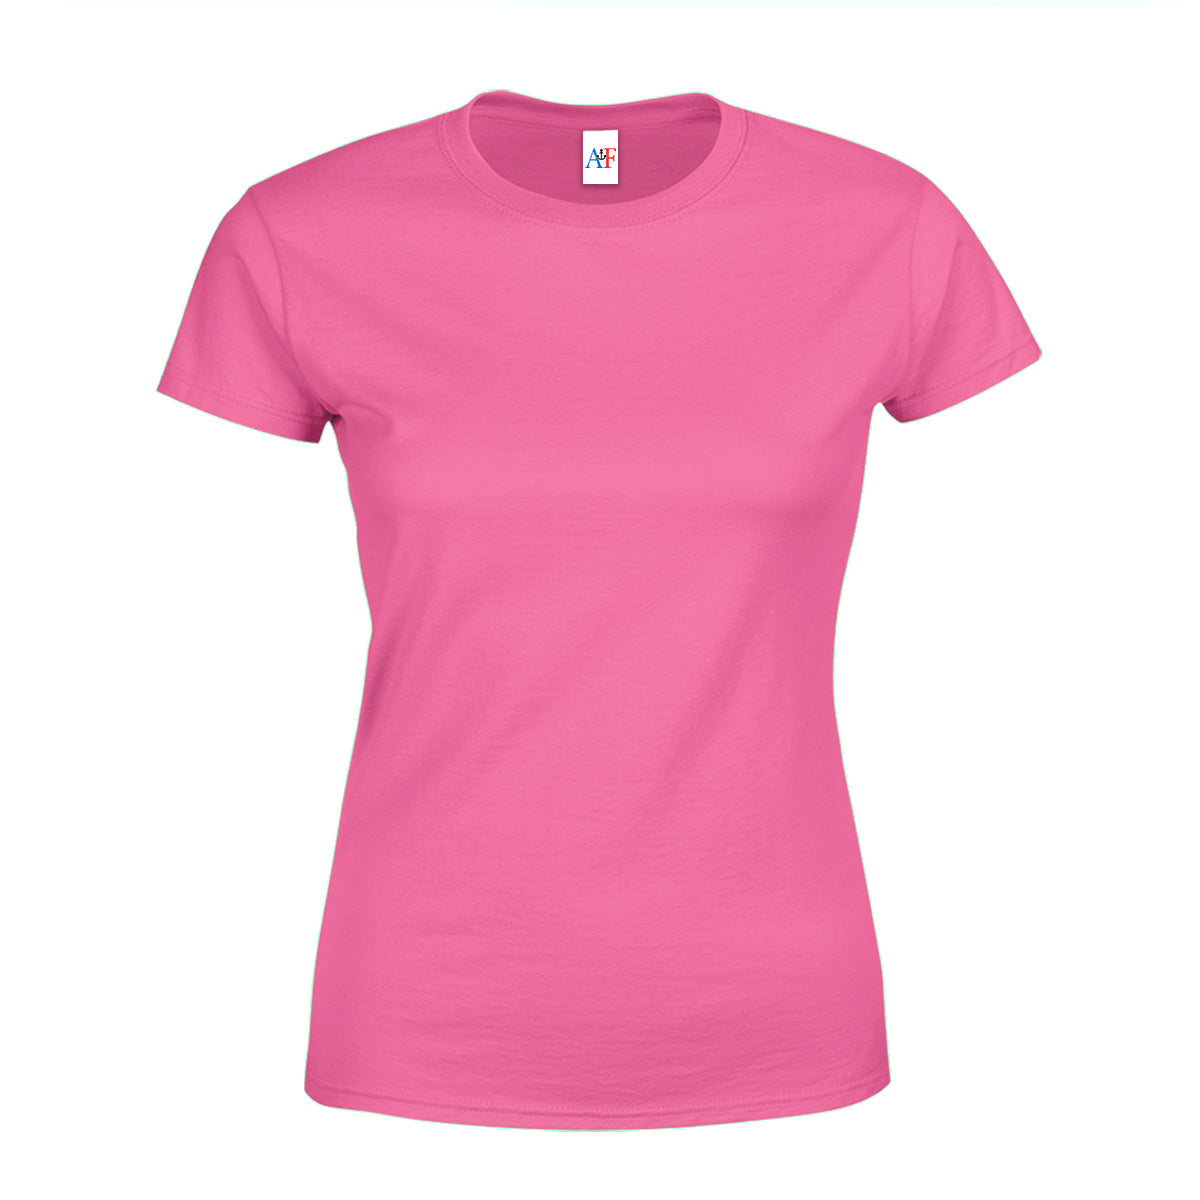 1005 Women's Fit Tee 4.3 Oz - Hot Pink Color - AF APPARELS(USA)